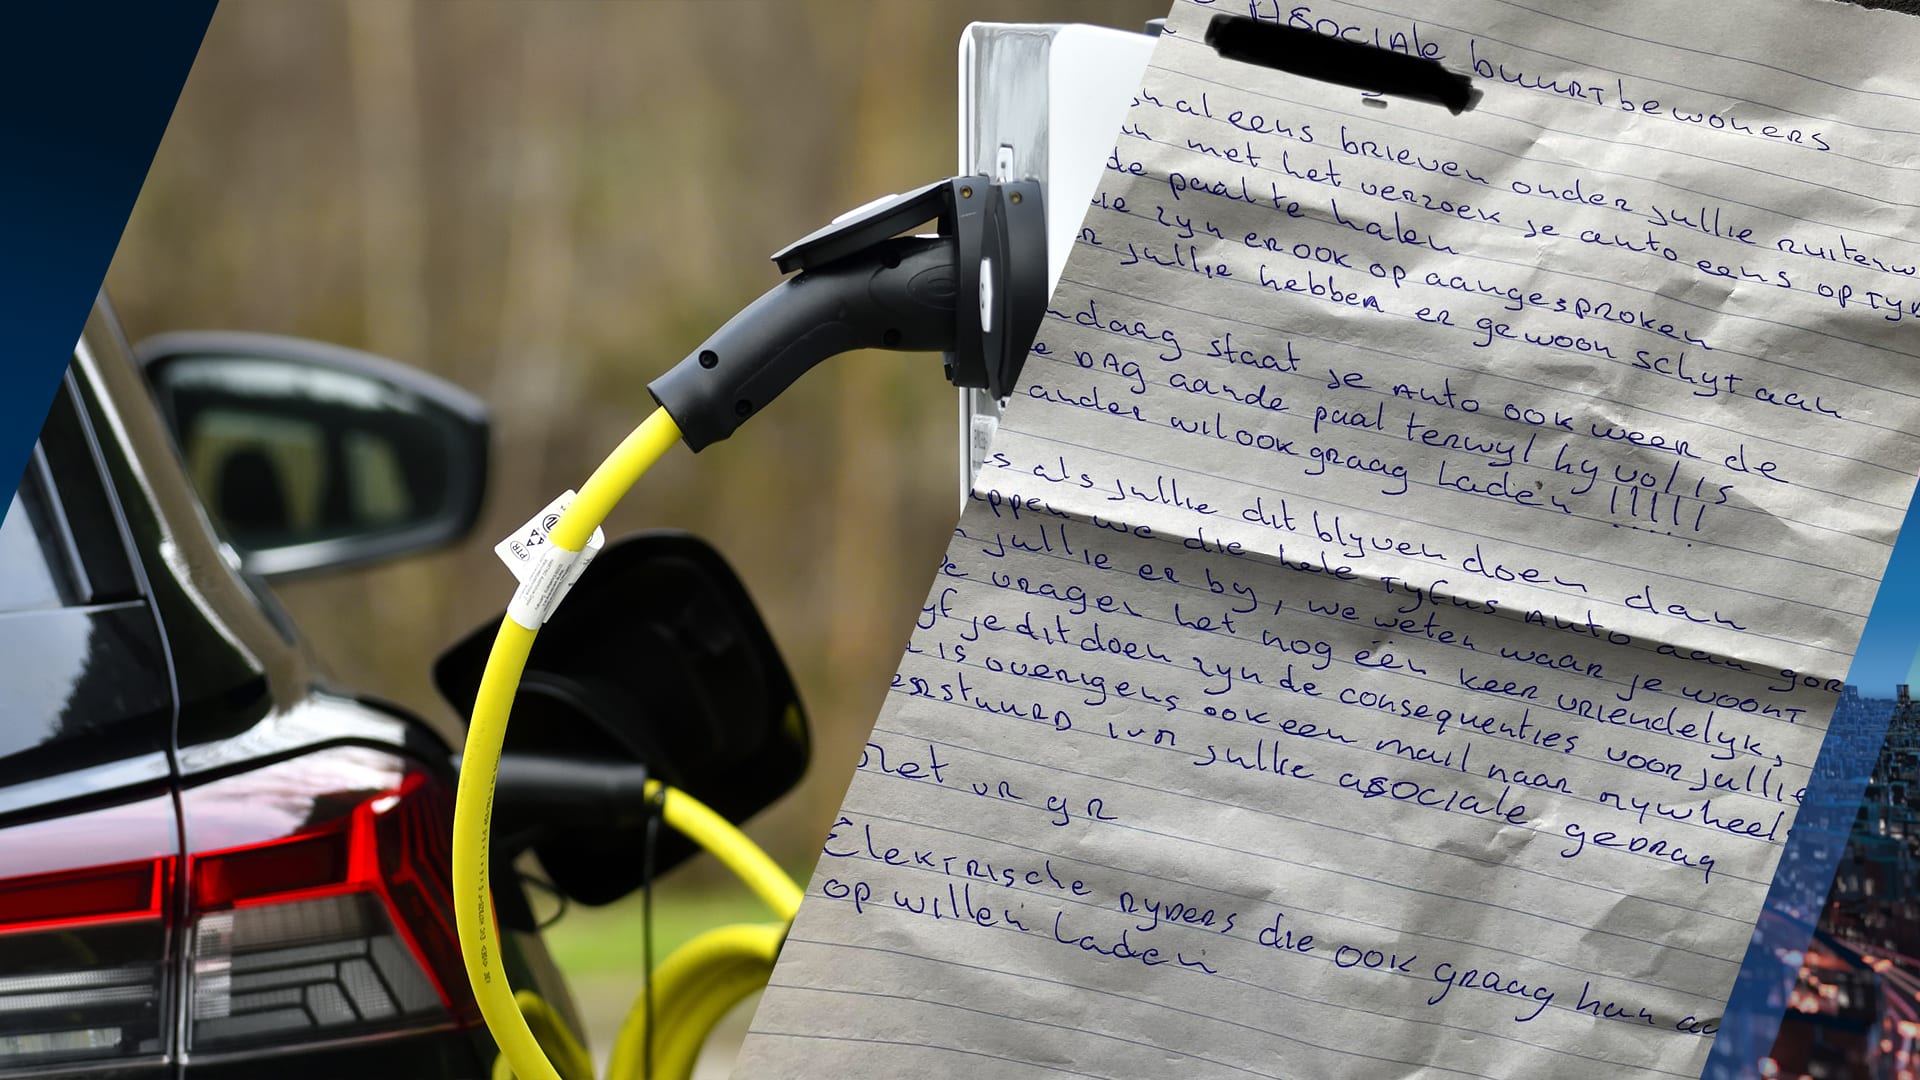 Brenda ontvangt dreigbrief over elektrische auto die constant aan laadpaal hangt: 'We trappen jullie aan gort'